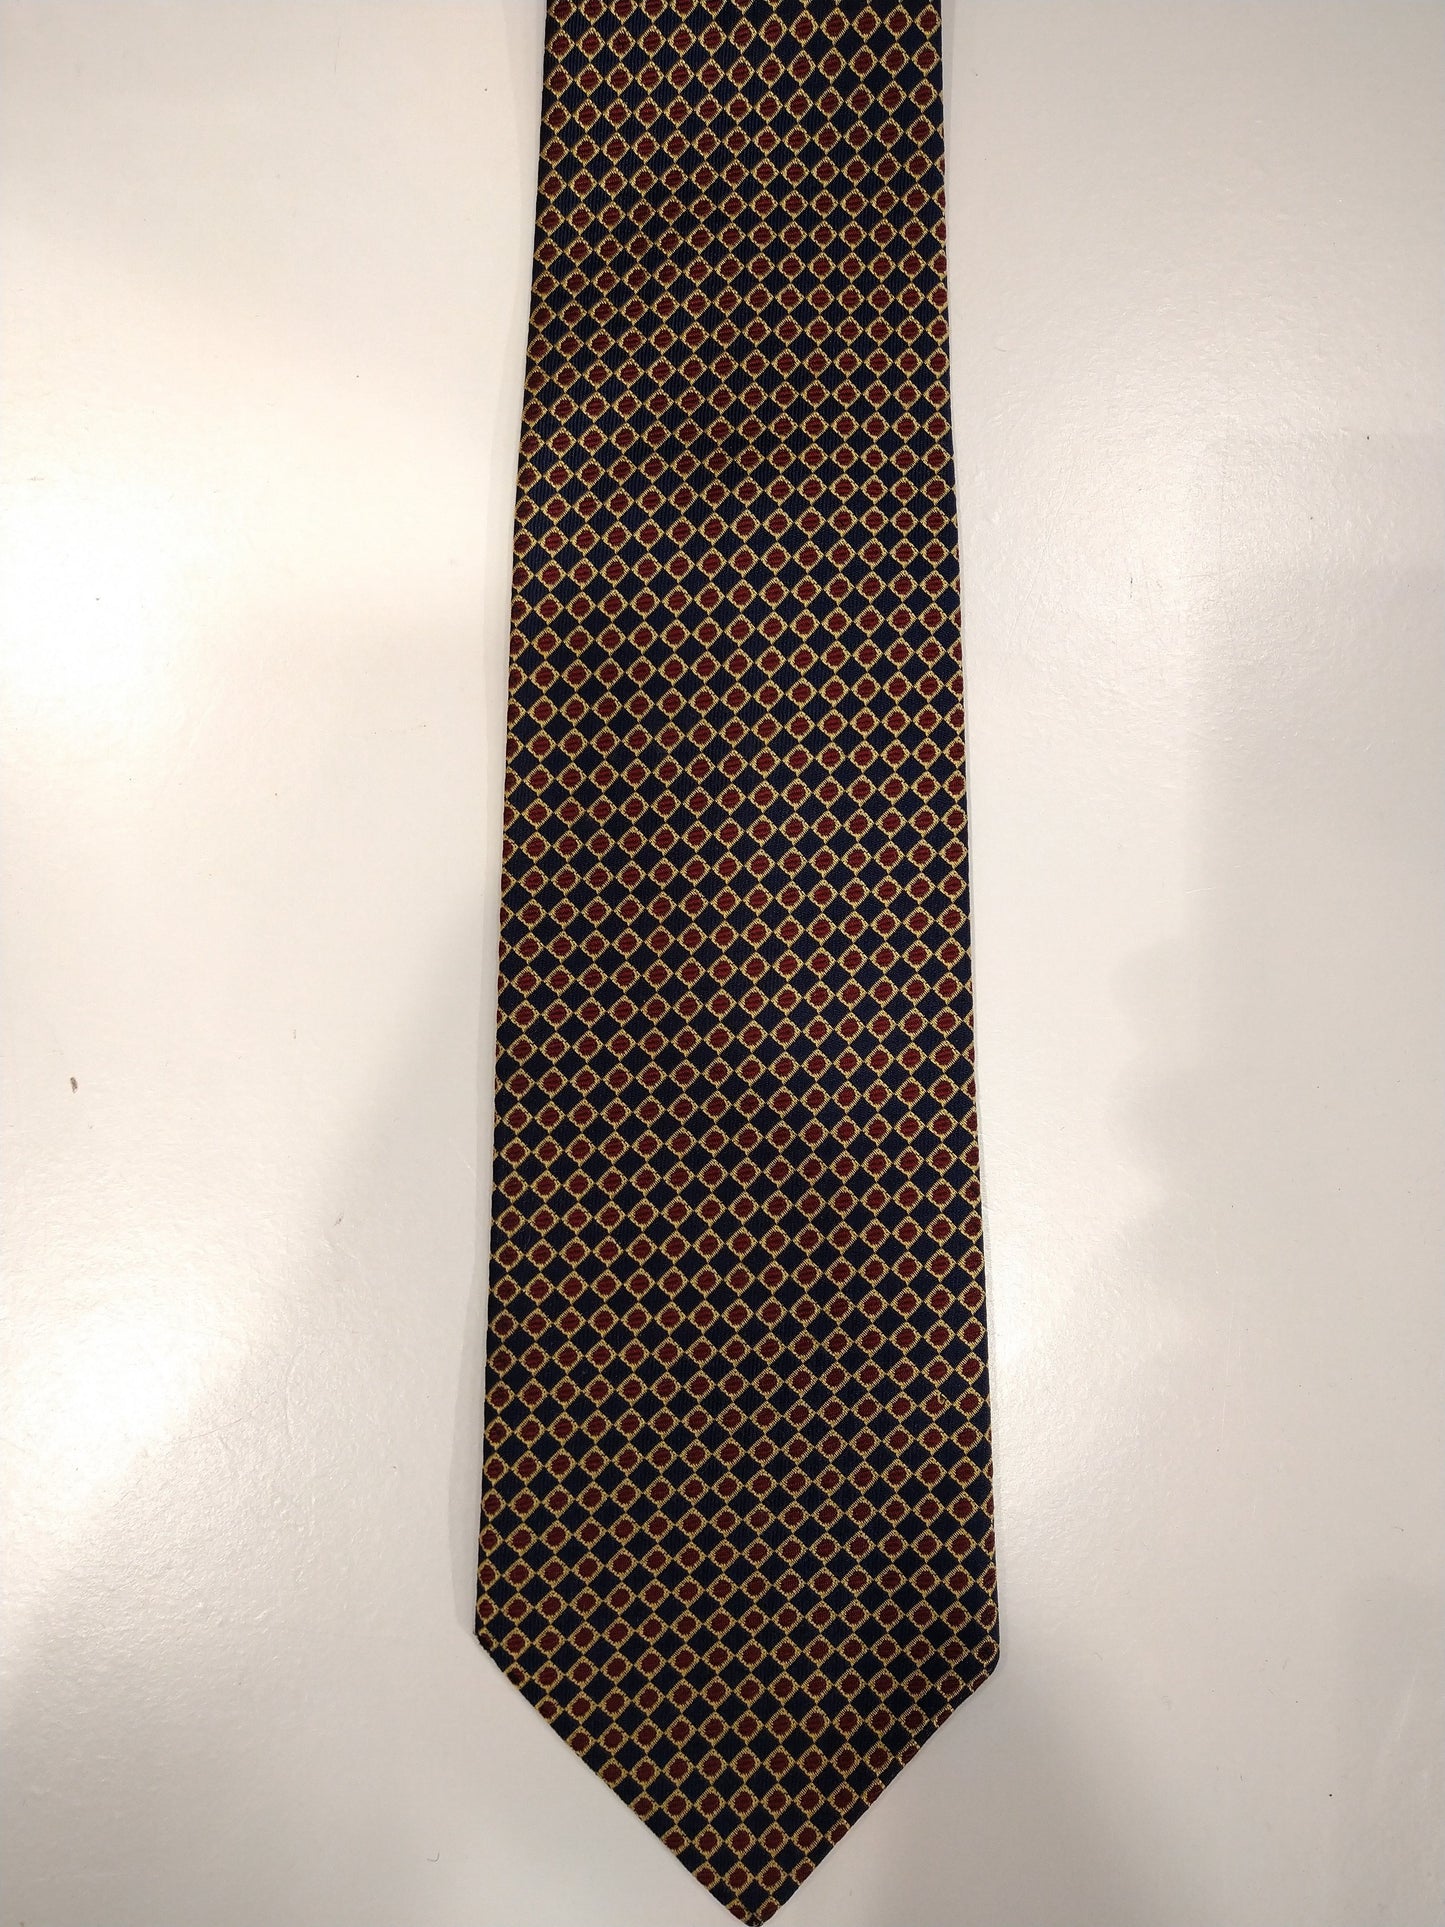 Vintage zijde stropdas. Blauw met goud / rood bolletjes motief.